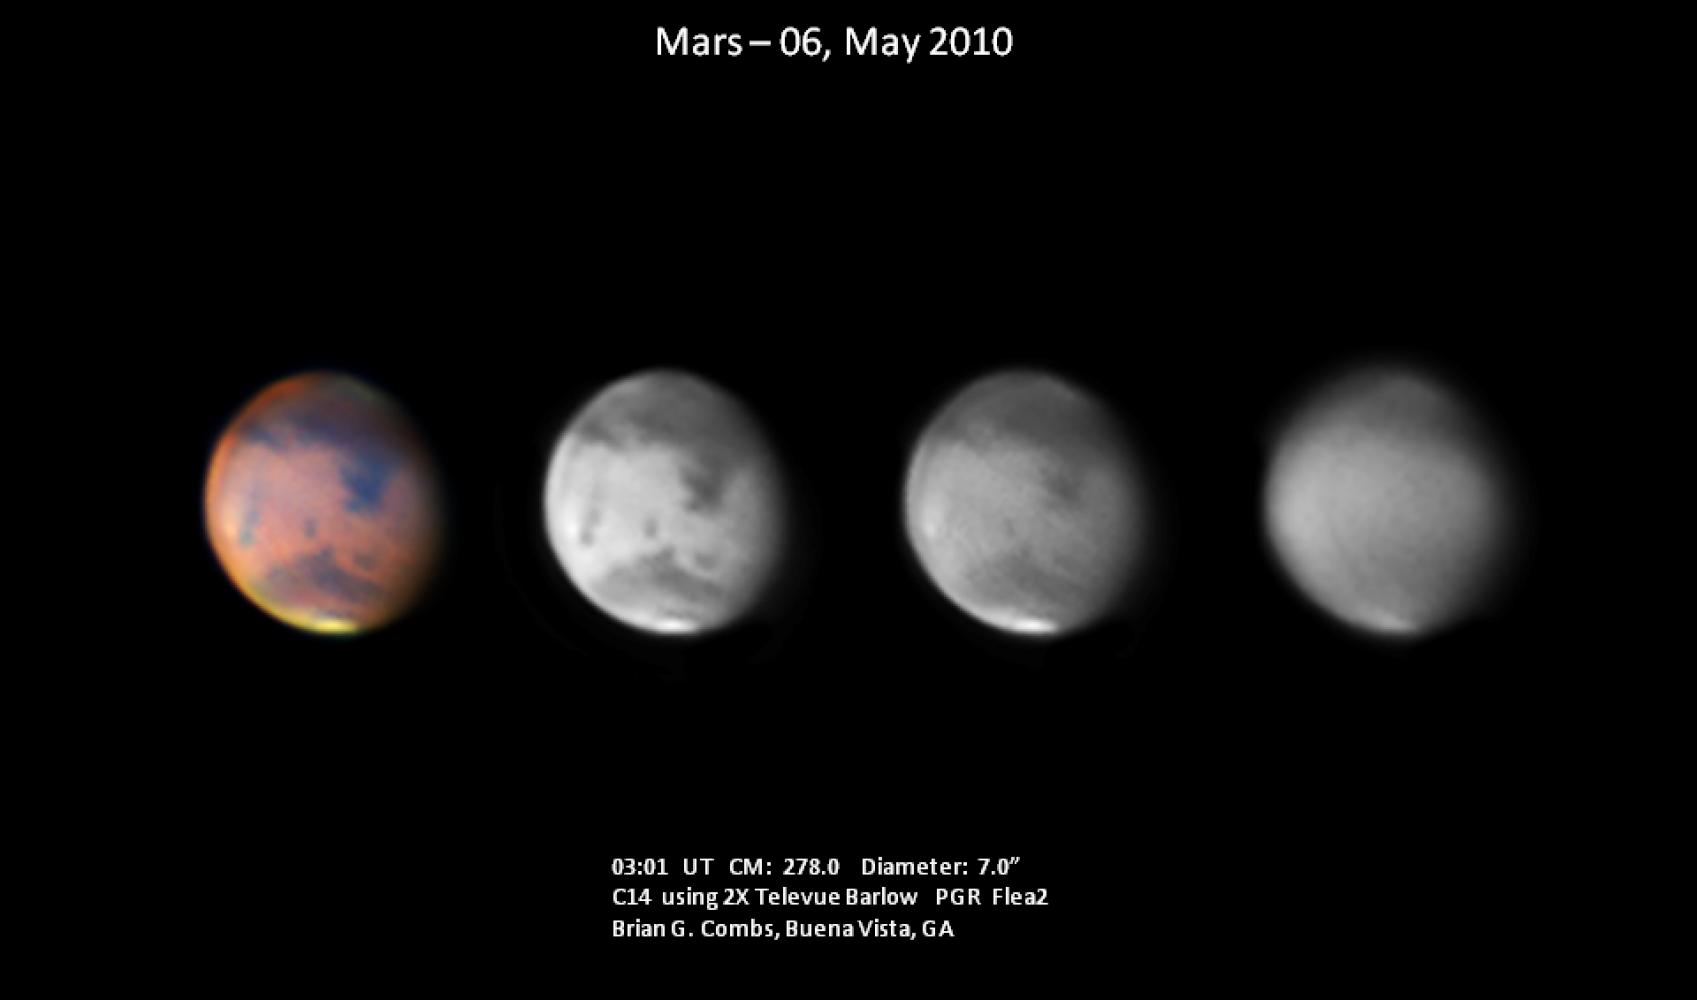 Mars - May 6, 2010